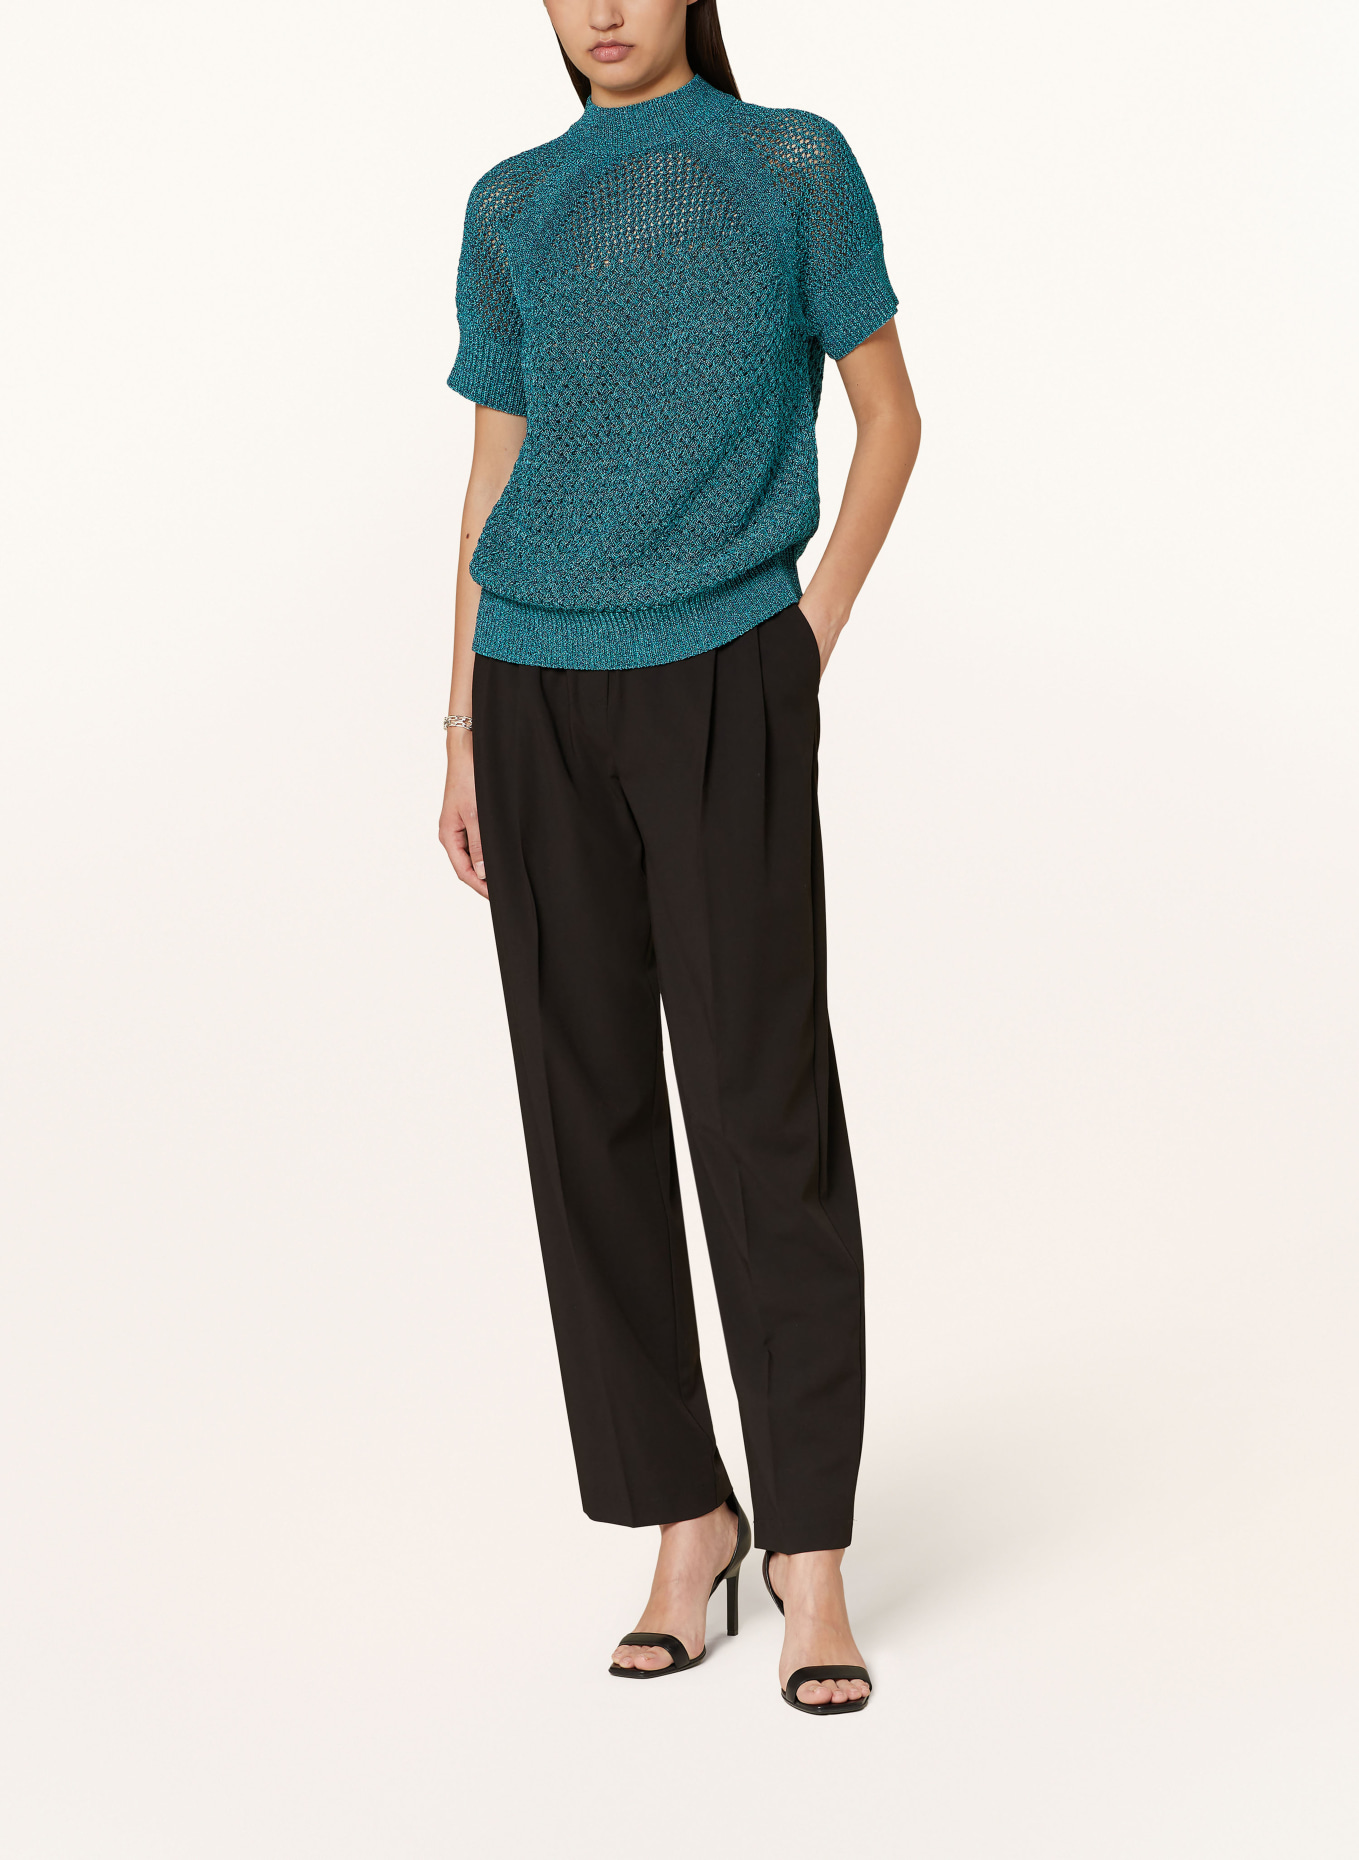 TED BAKER Knit shirt MATILDR, Color: TEAL (Image 2)